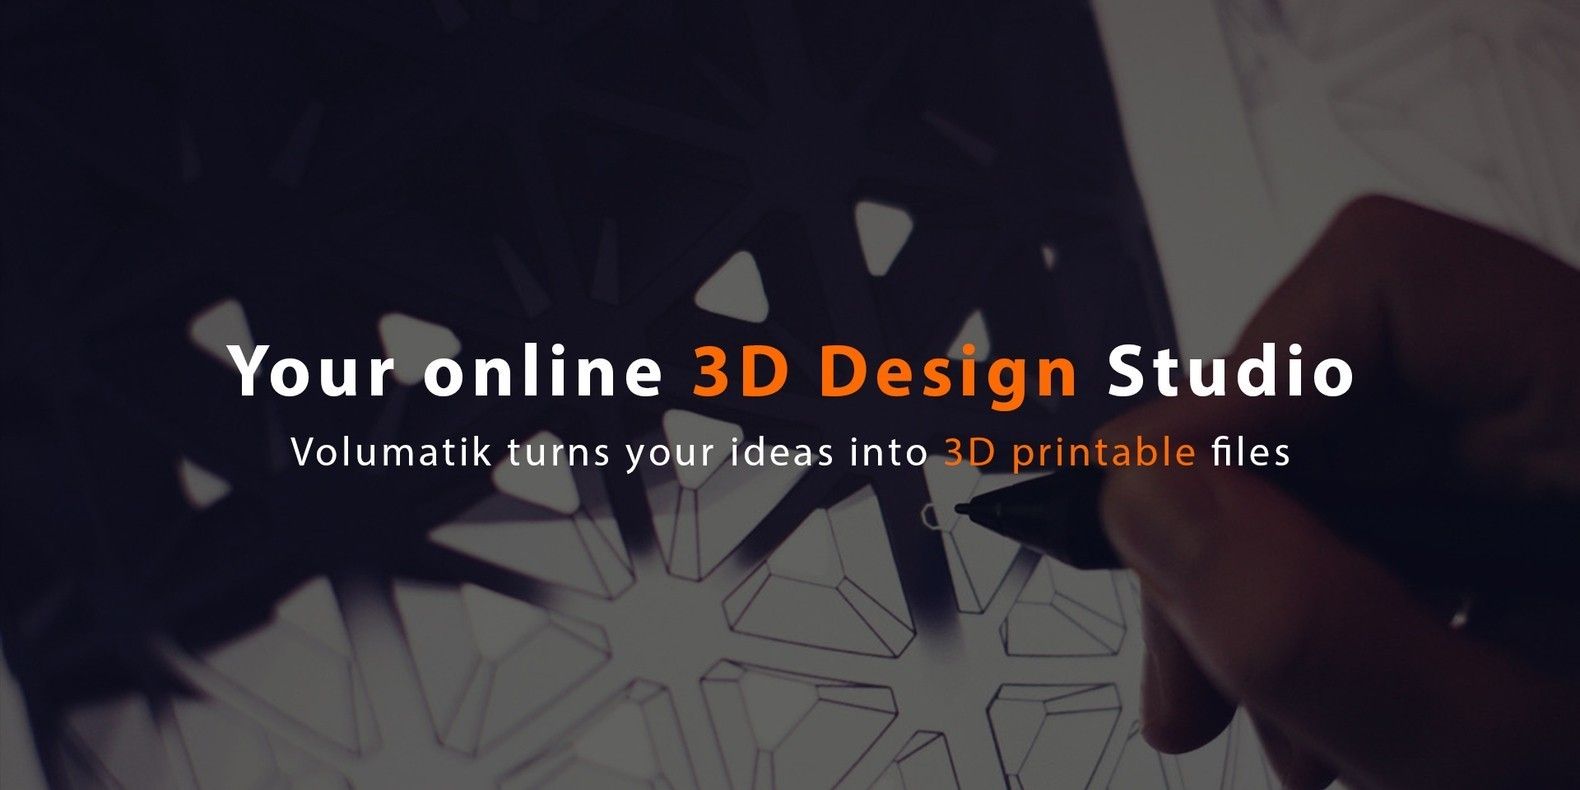 Conozca a Volumatik • el estudio de diseño 3D en línea que convierte sus ideas en archivos imprimibles en 3D. 